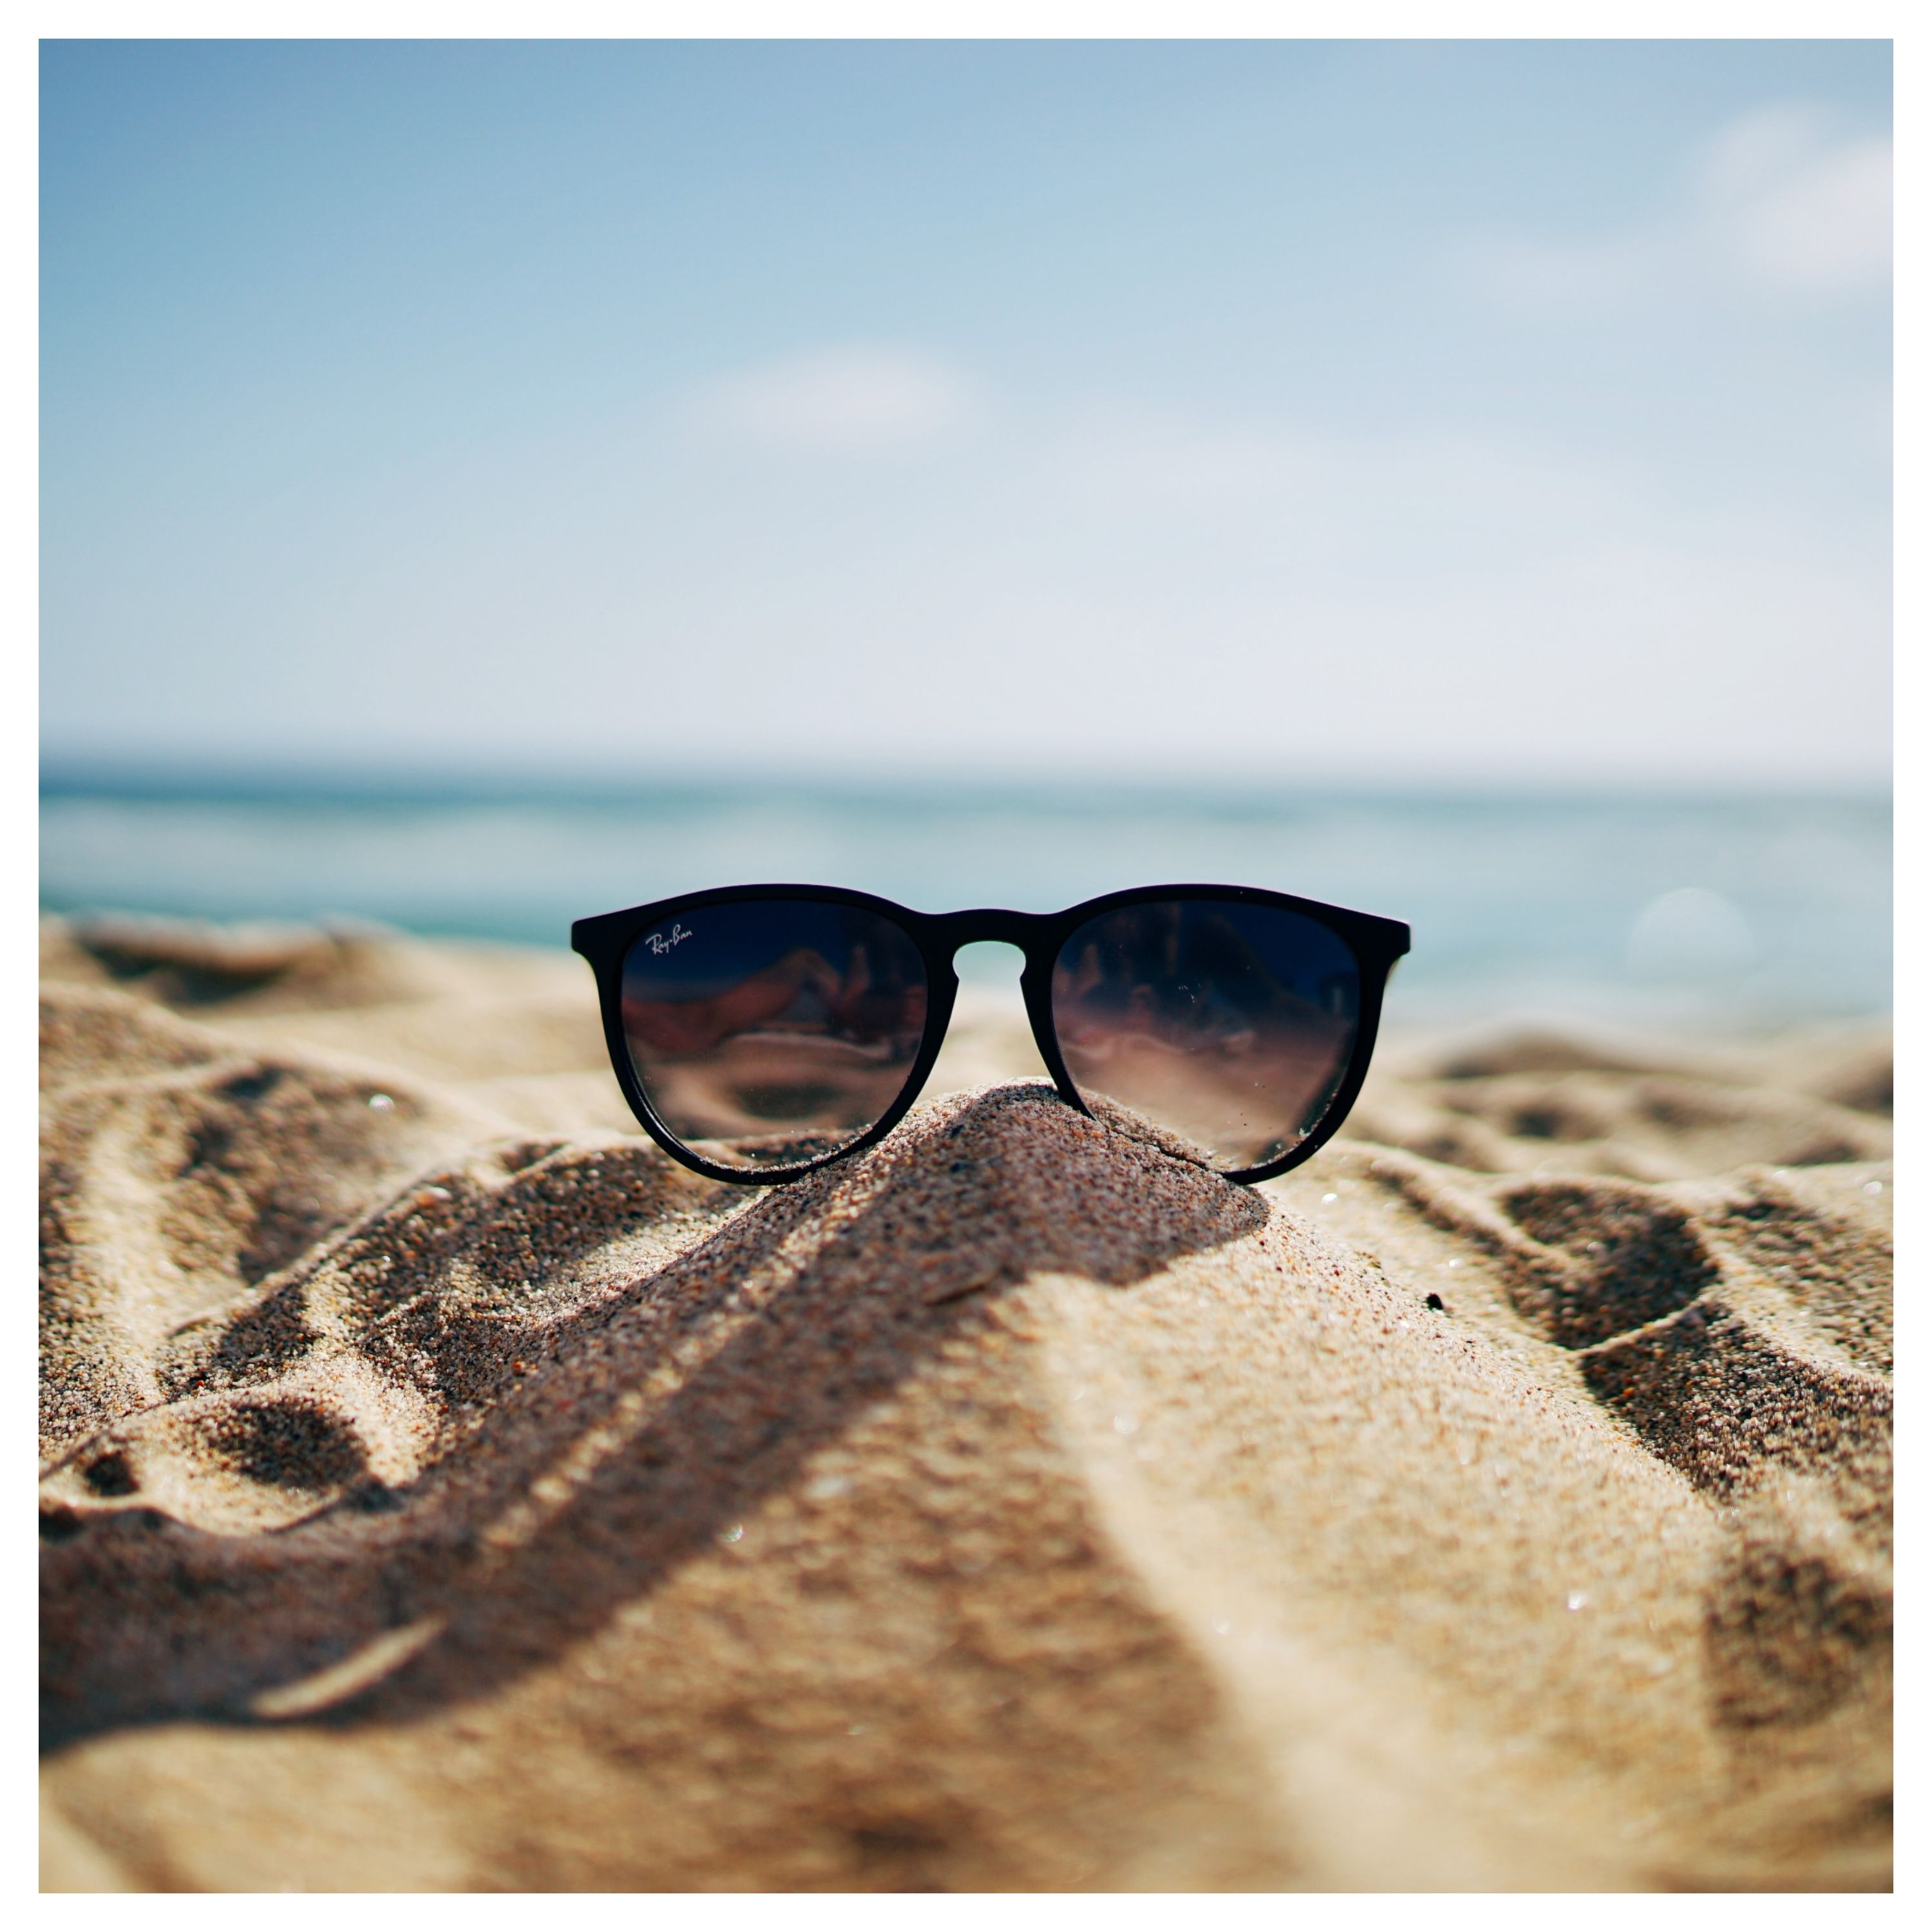 Paire de lunettes de soleil posée sur du sable, avec la mer en arrière-plan